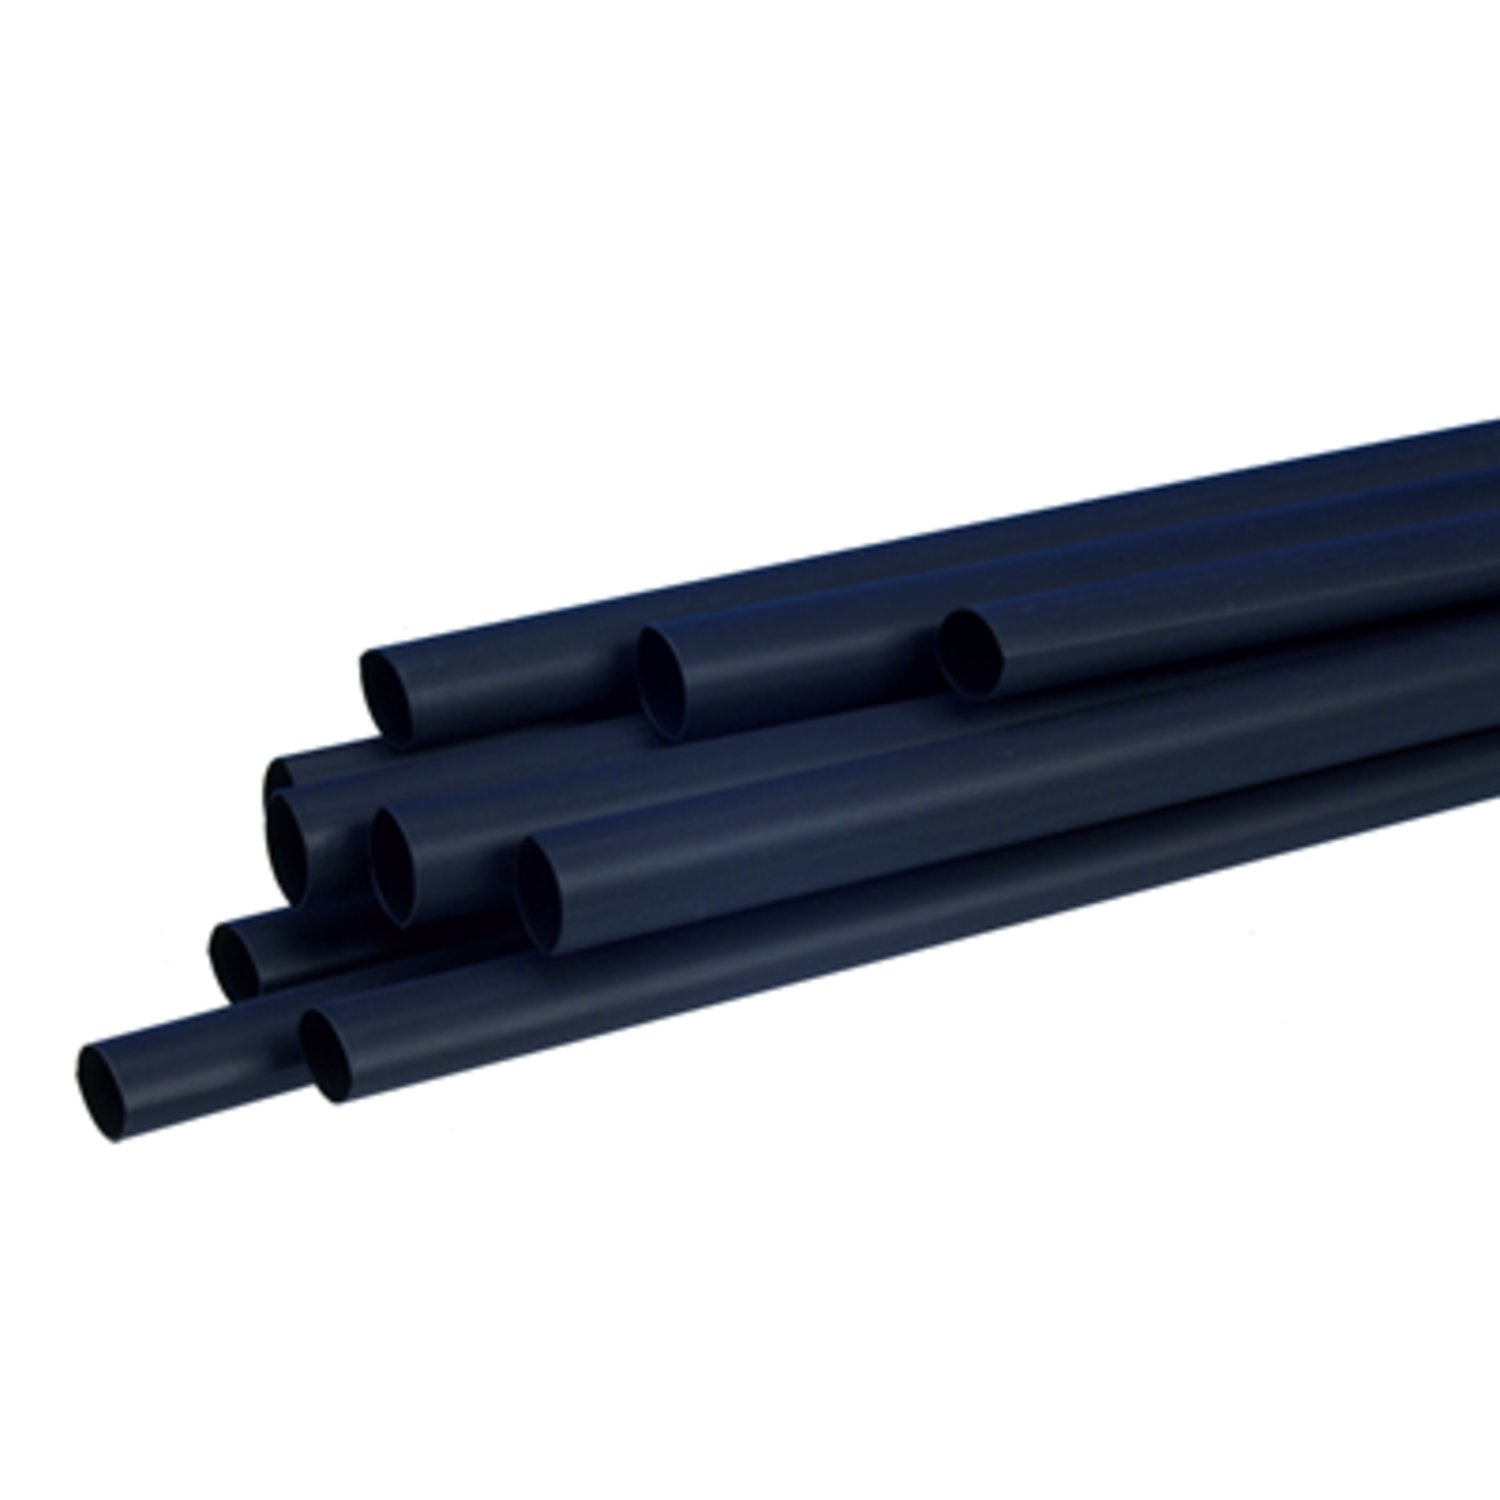 7100025261 - 3M SFTW-203 1" Heat Shrink Tubing Polyolefin, Black, 24.0/8.0 mm, 30.5
m Roll